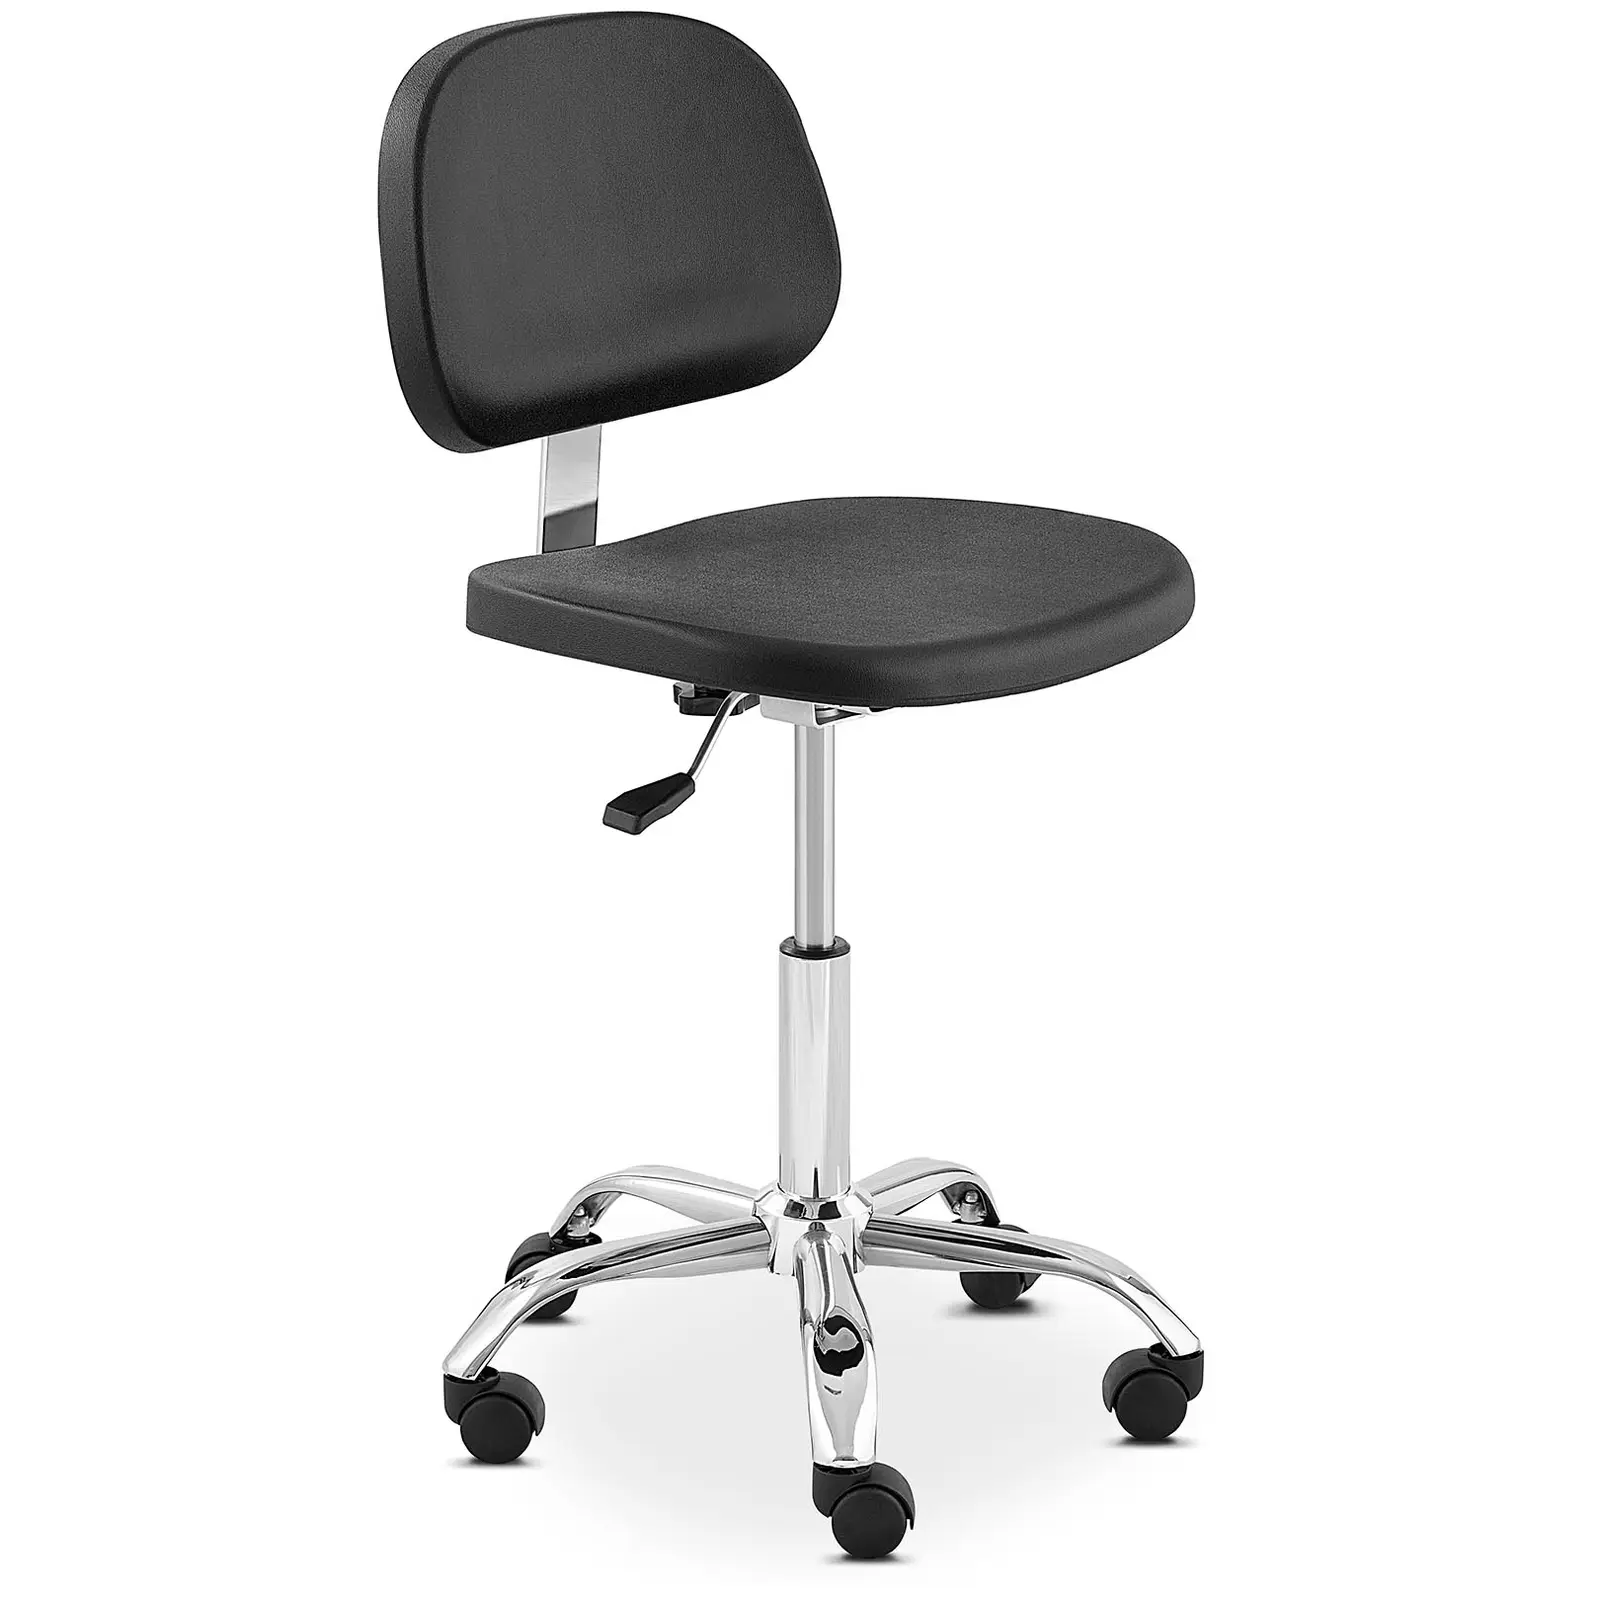 Produtos recondicionados Cadeira de trabalho - 120 kg - em preto, elementos cromados - altura 450 - 585 mm